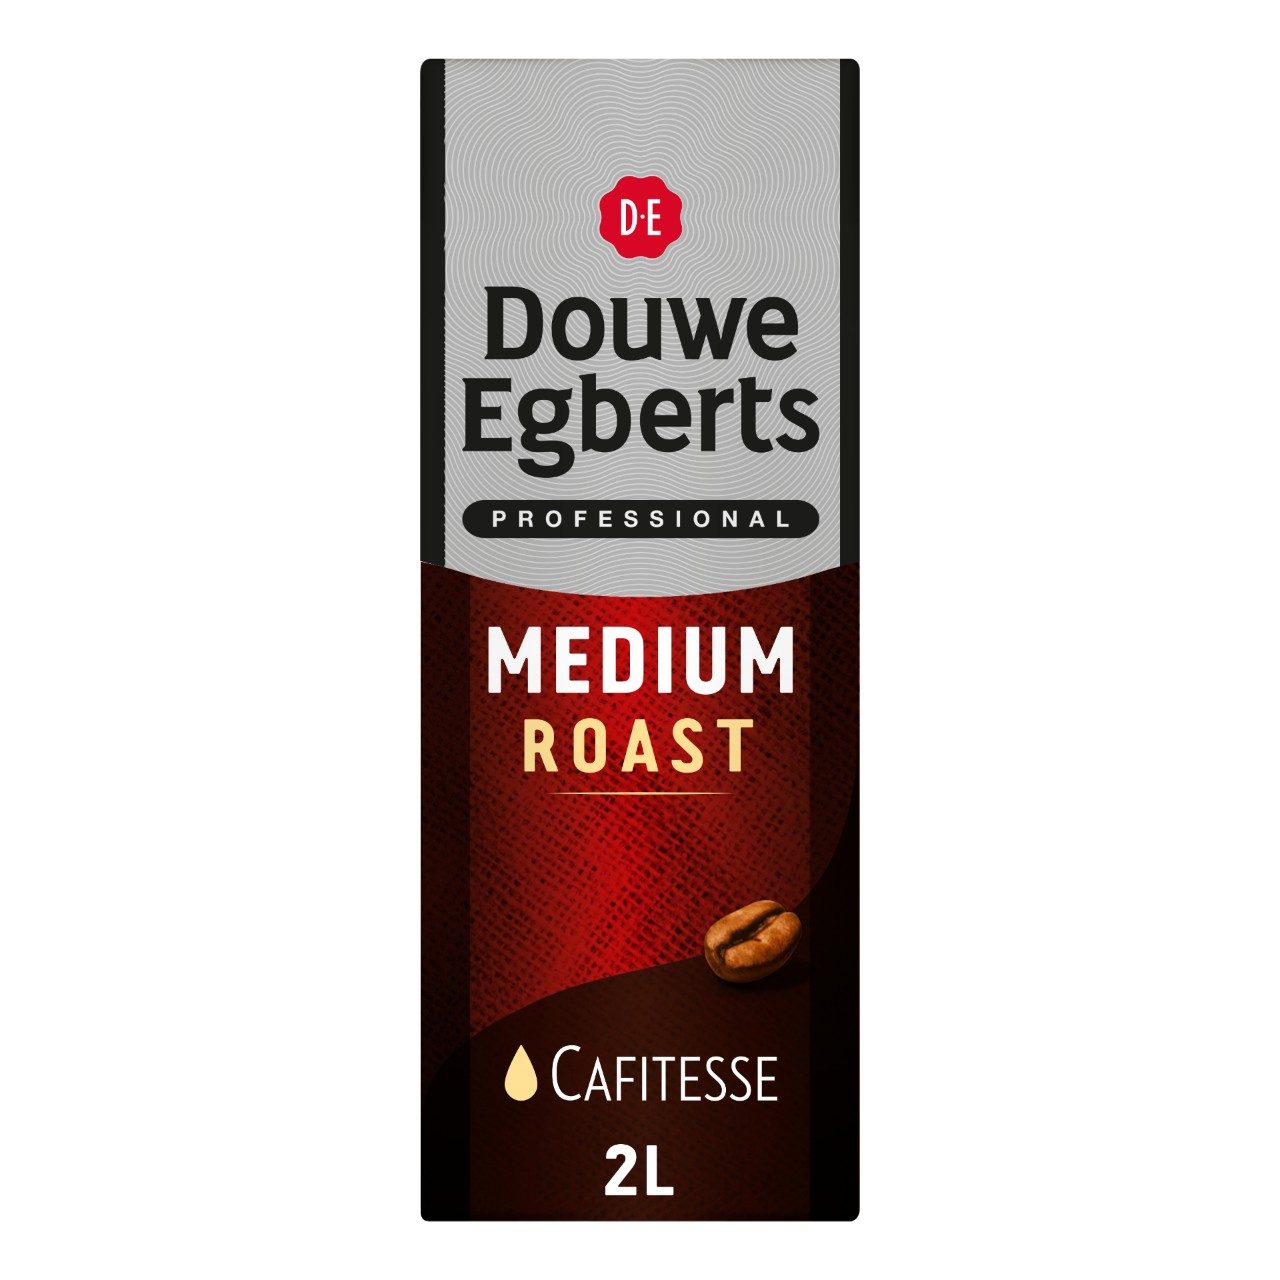 Cafitesse medium roast